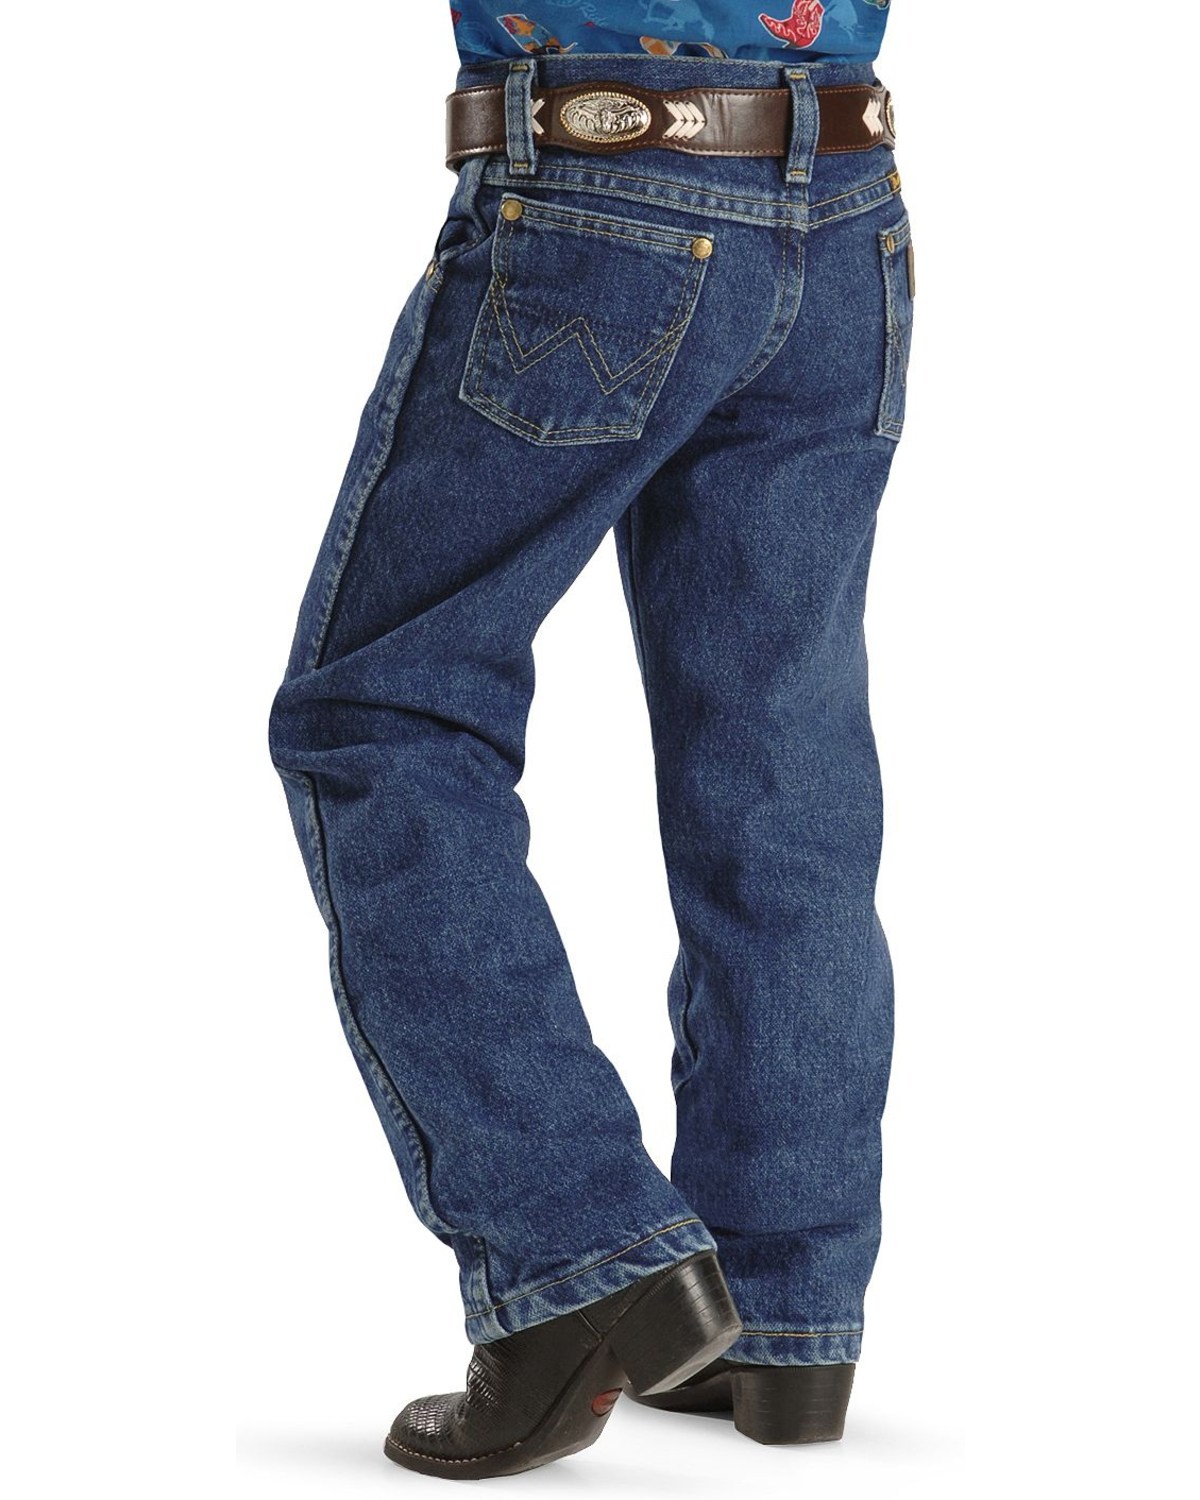 wrangler jeans boys